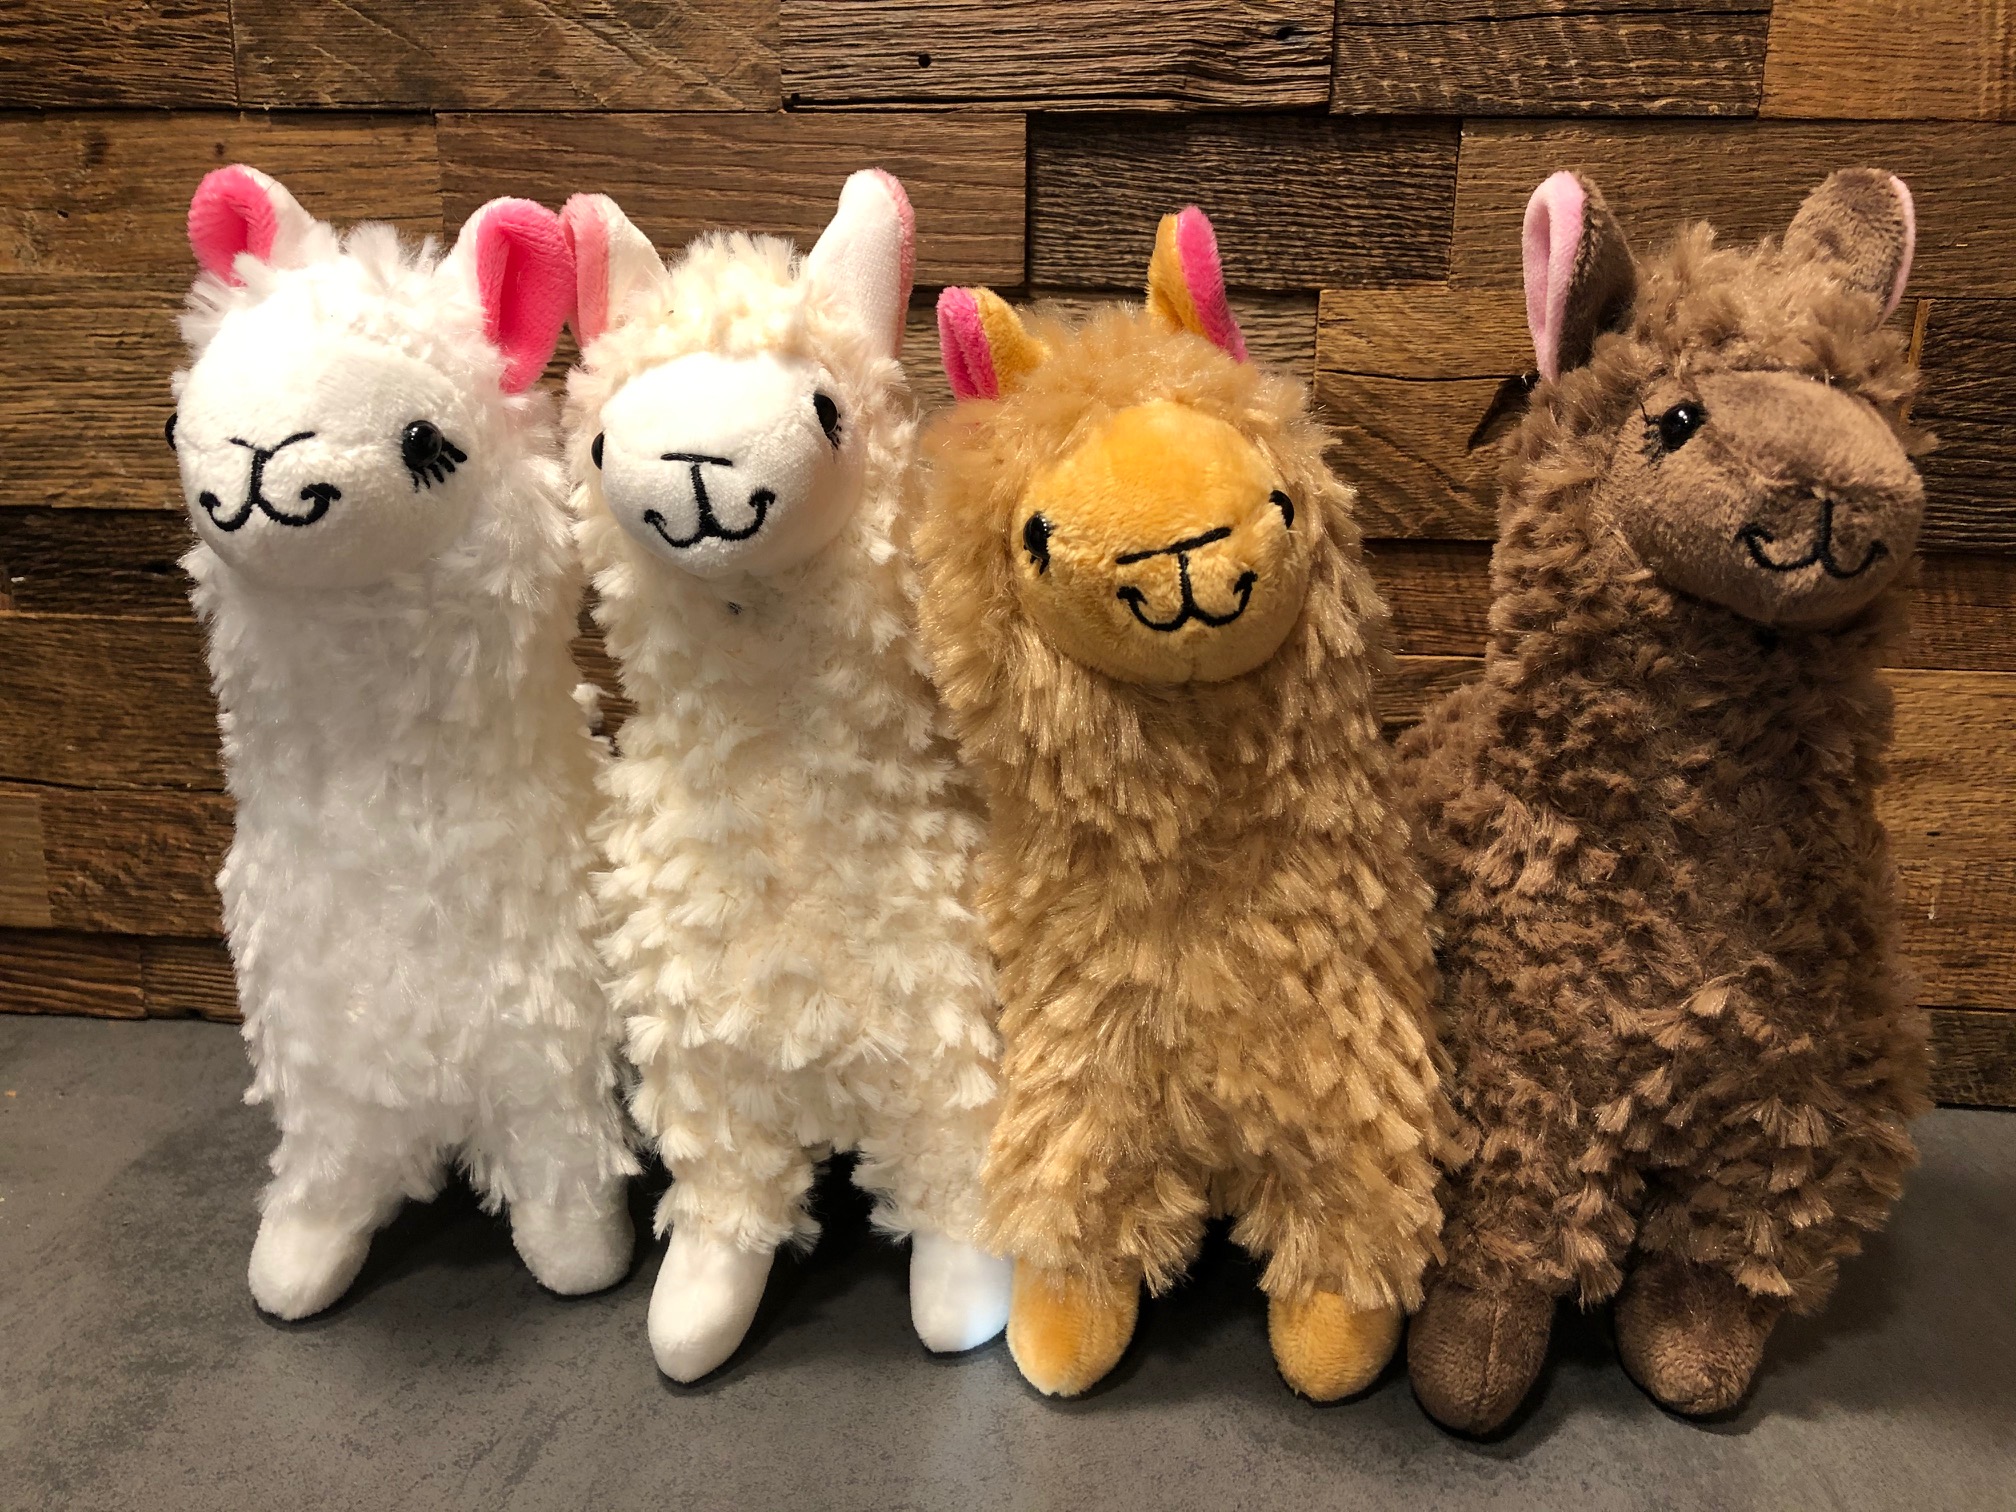 Kinder Kawaii Alpacasso Spielzeug Lama Alpaka Plüsch Kuscheltier Kissen Geschenk 